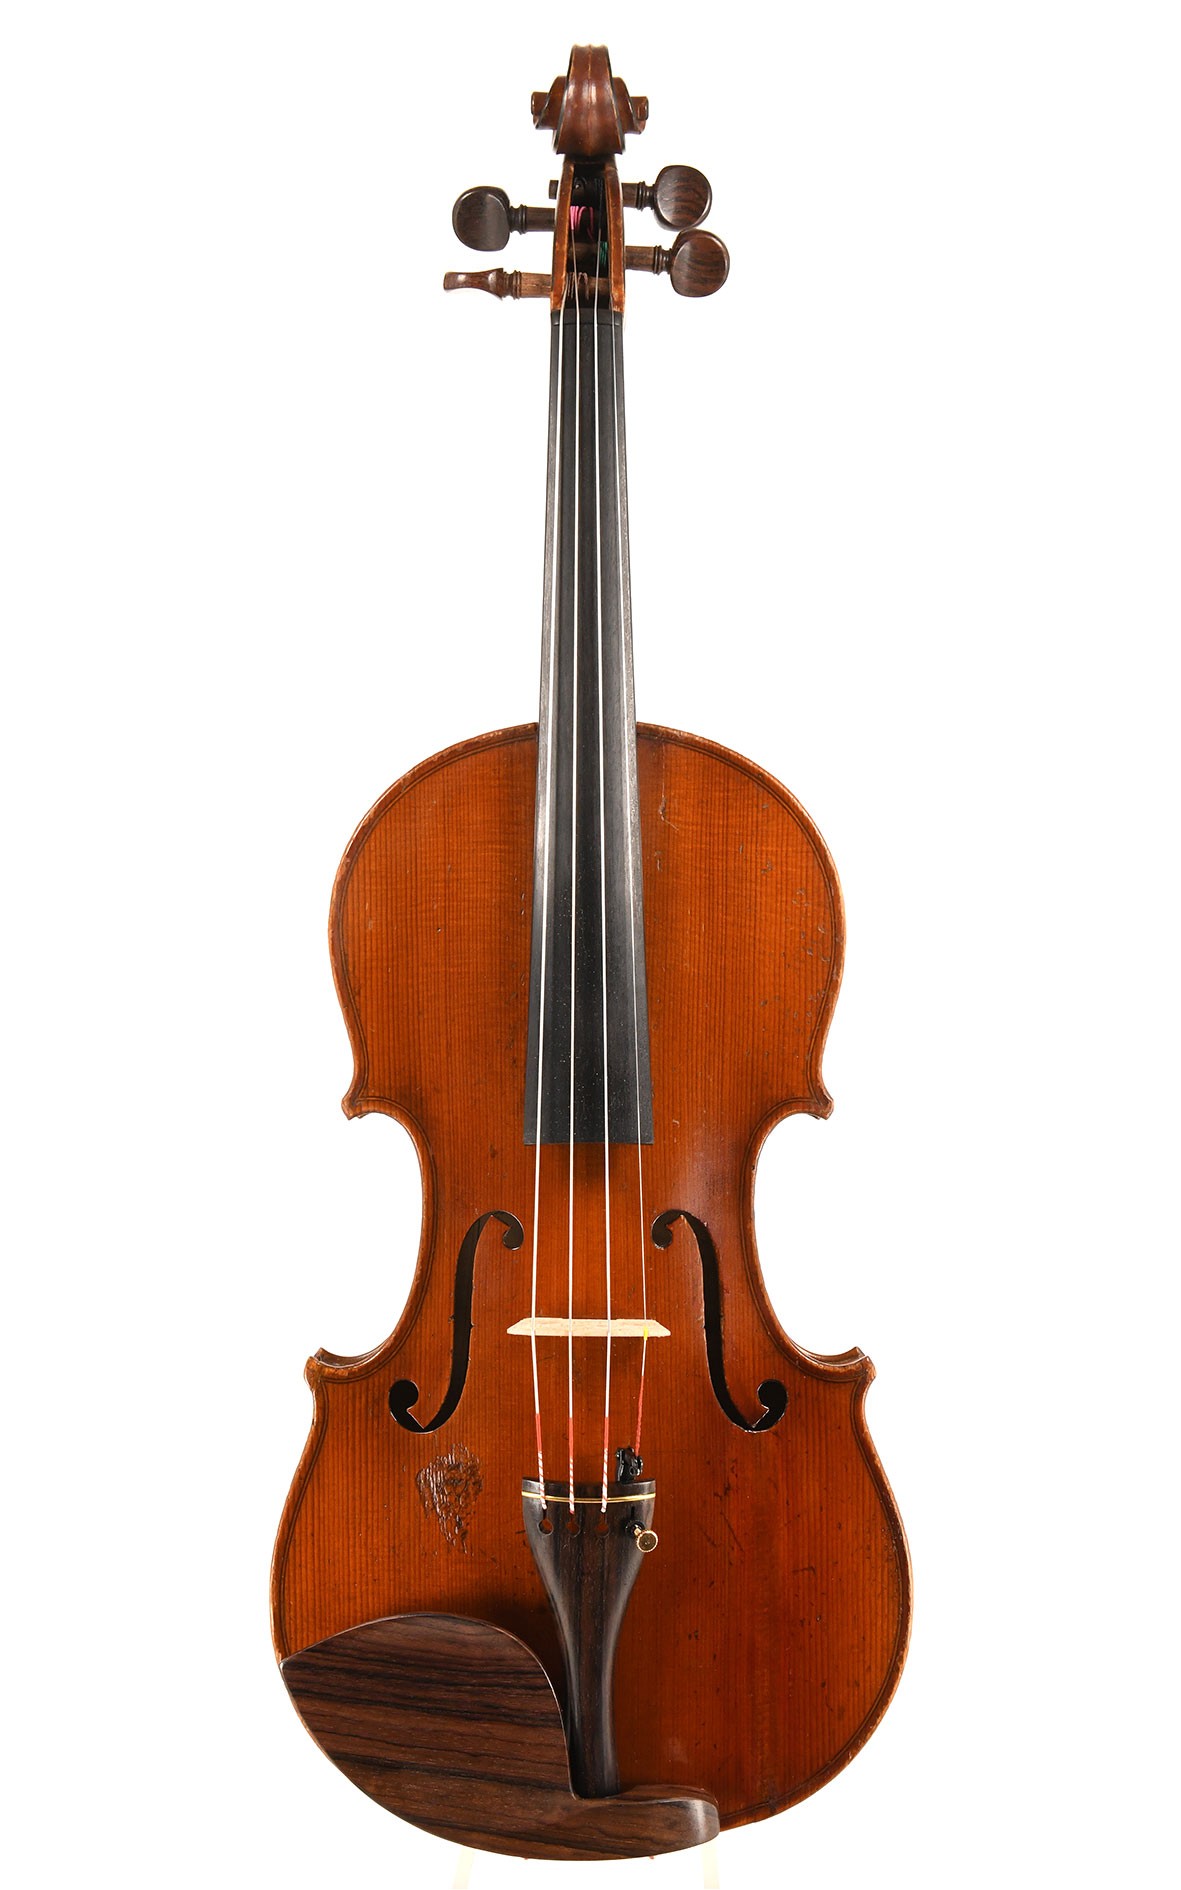 Collin-Mezin violin made in 1924